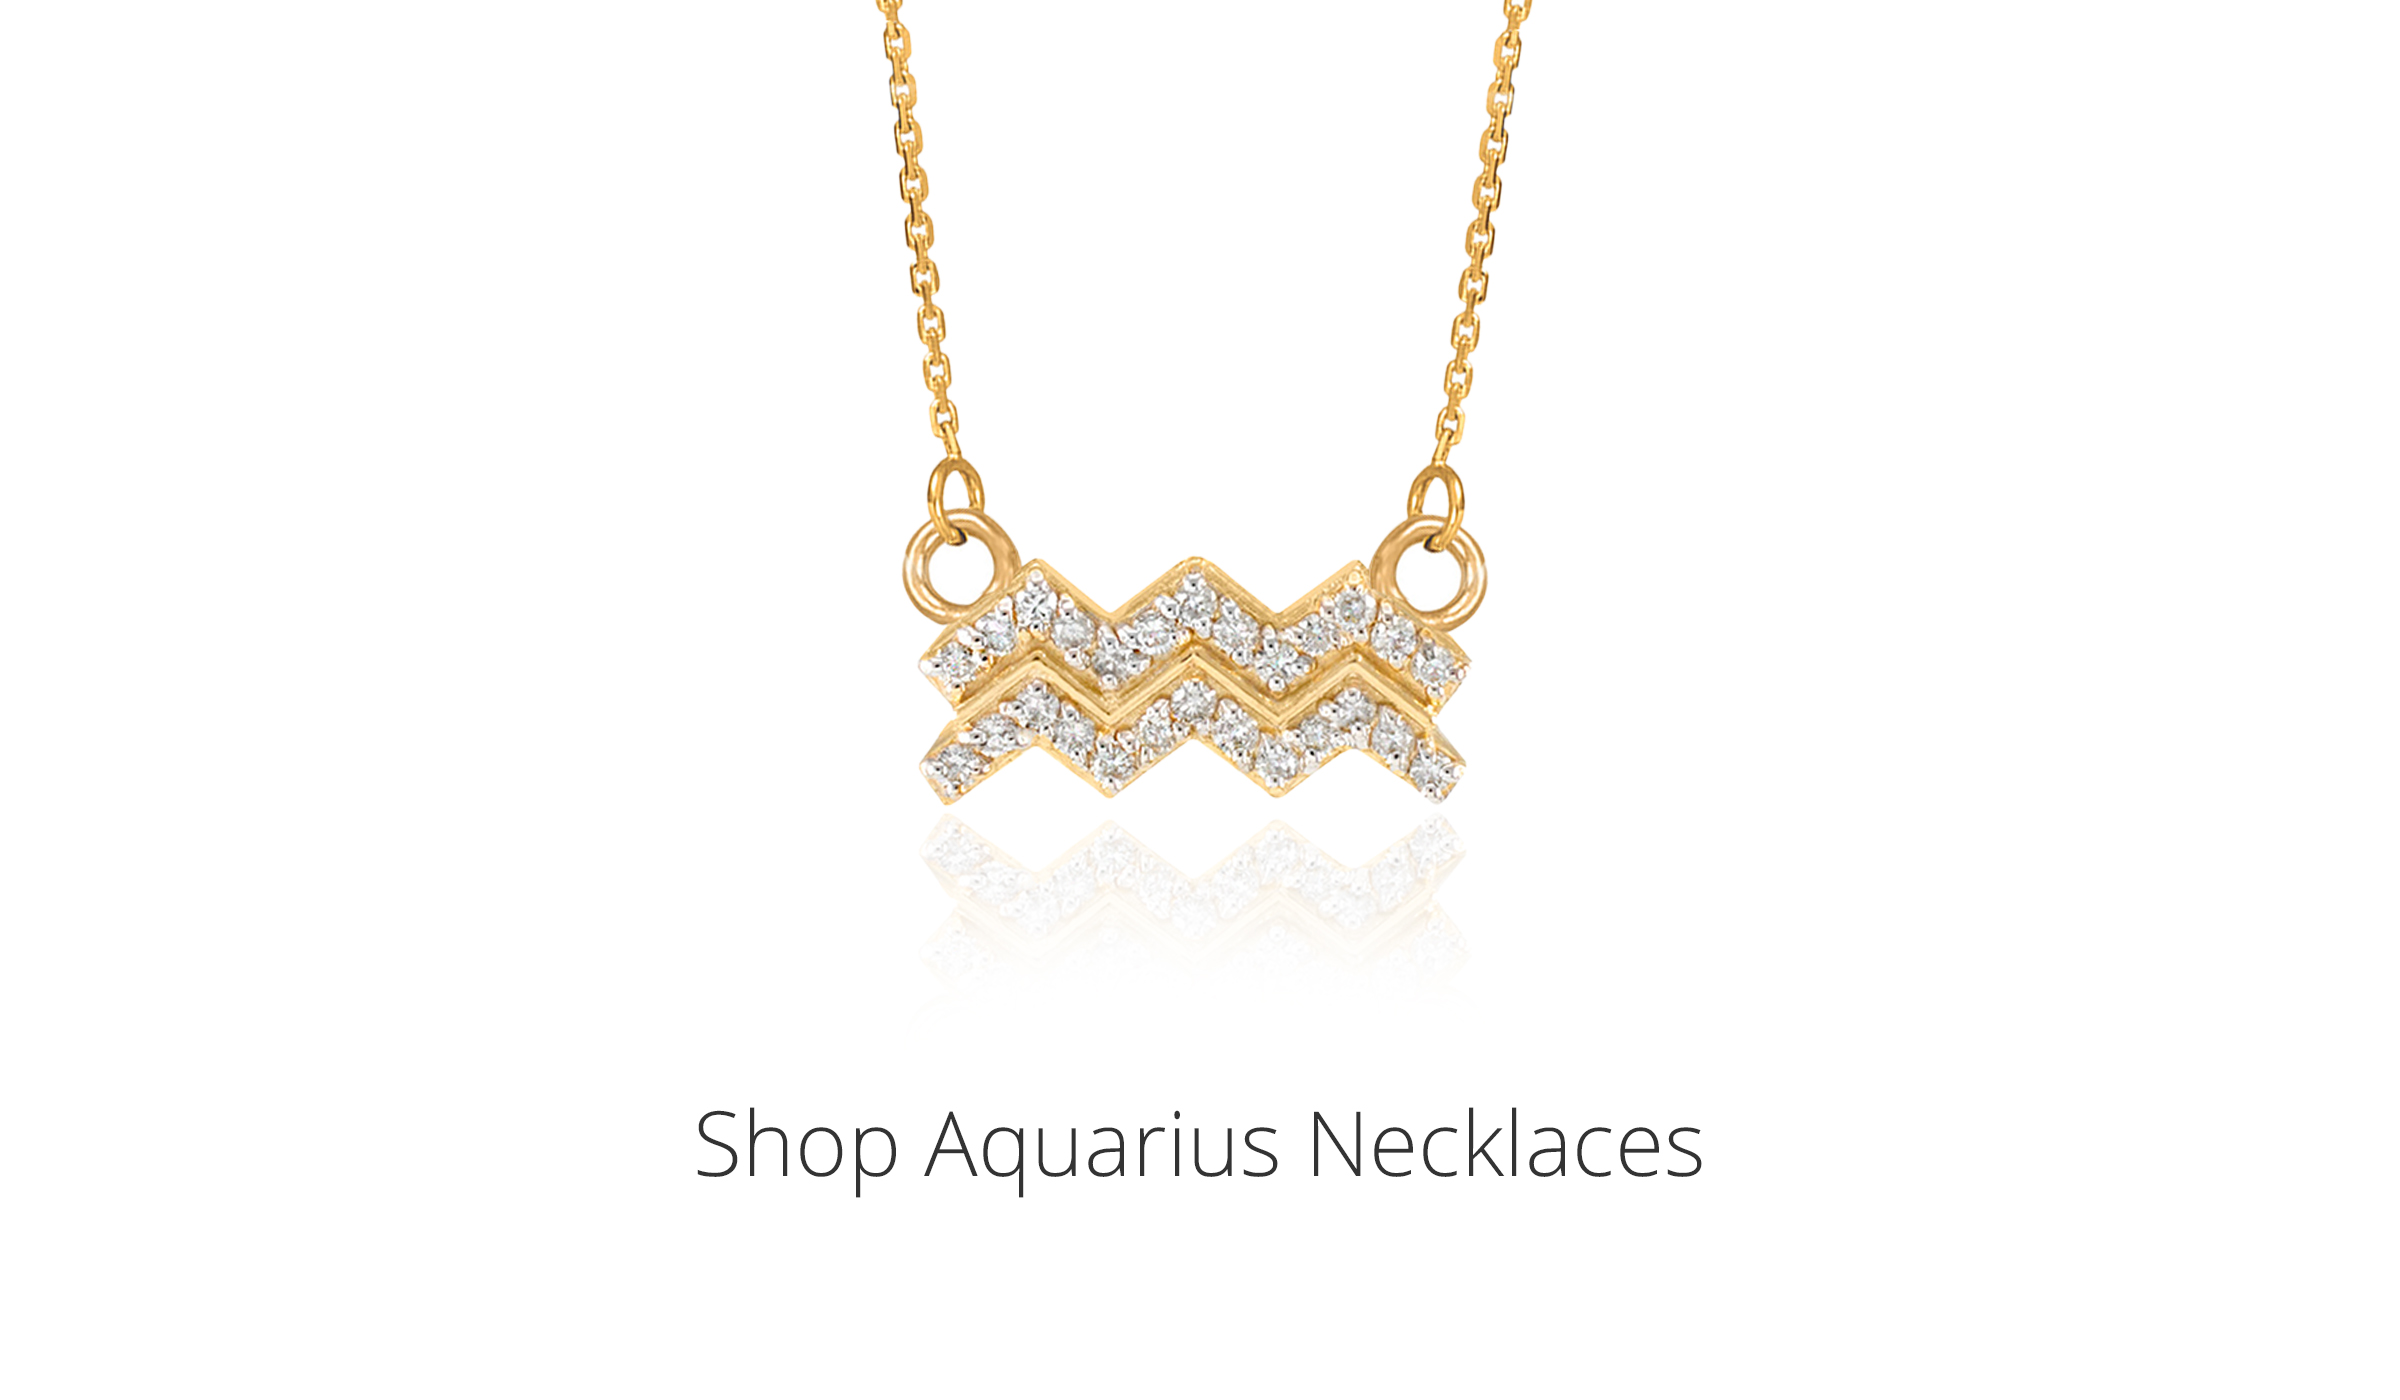 Shop Aquarius Necklaces